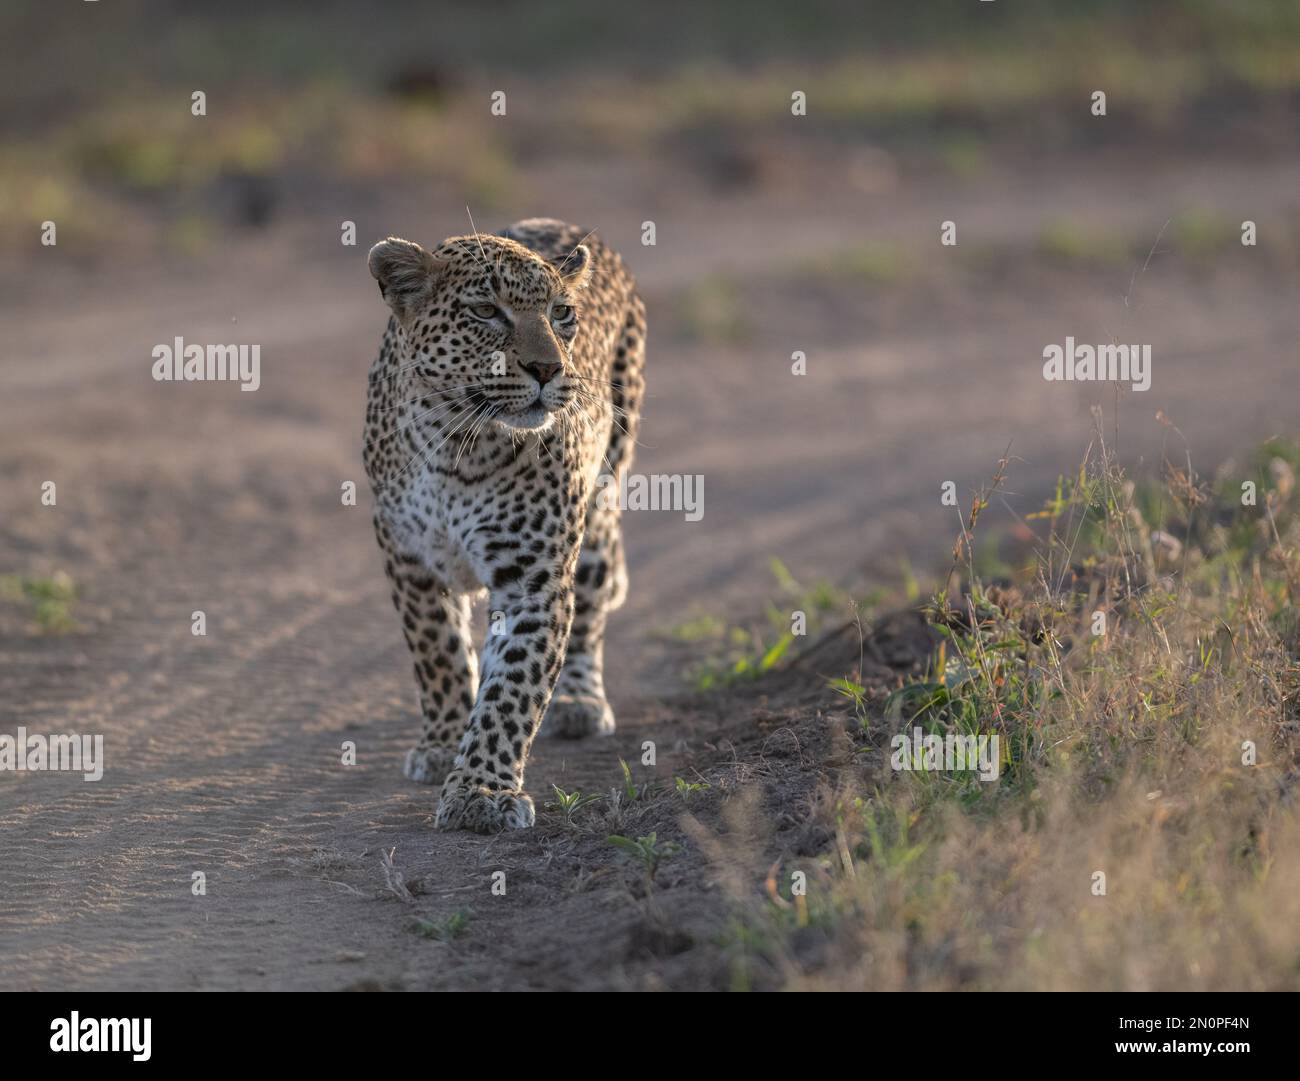 Un leopardo, Panthera Pardus, camina por un camino de tierra. Foto de stock